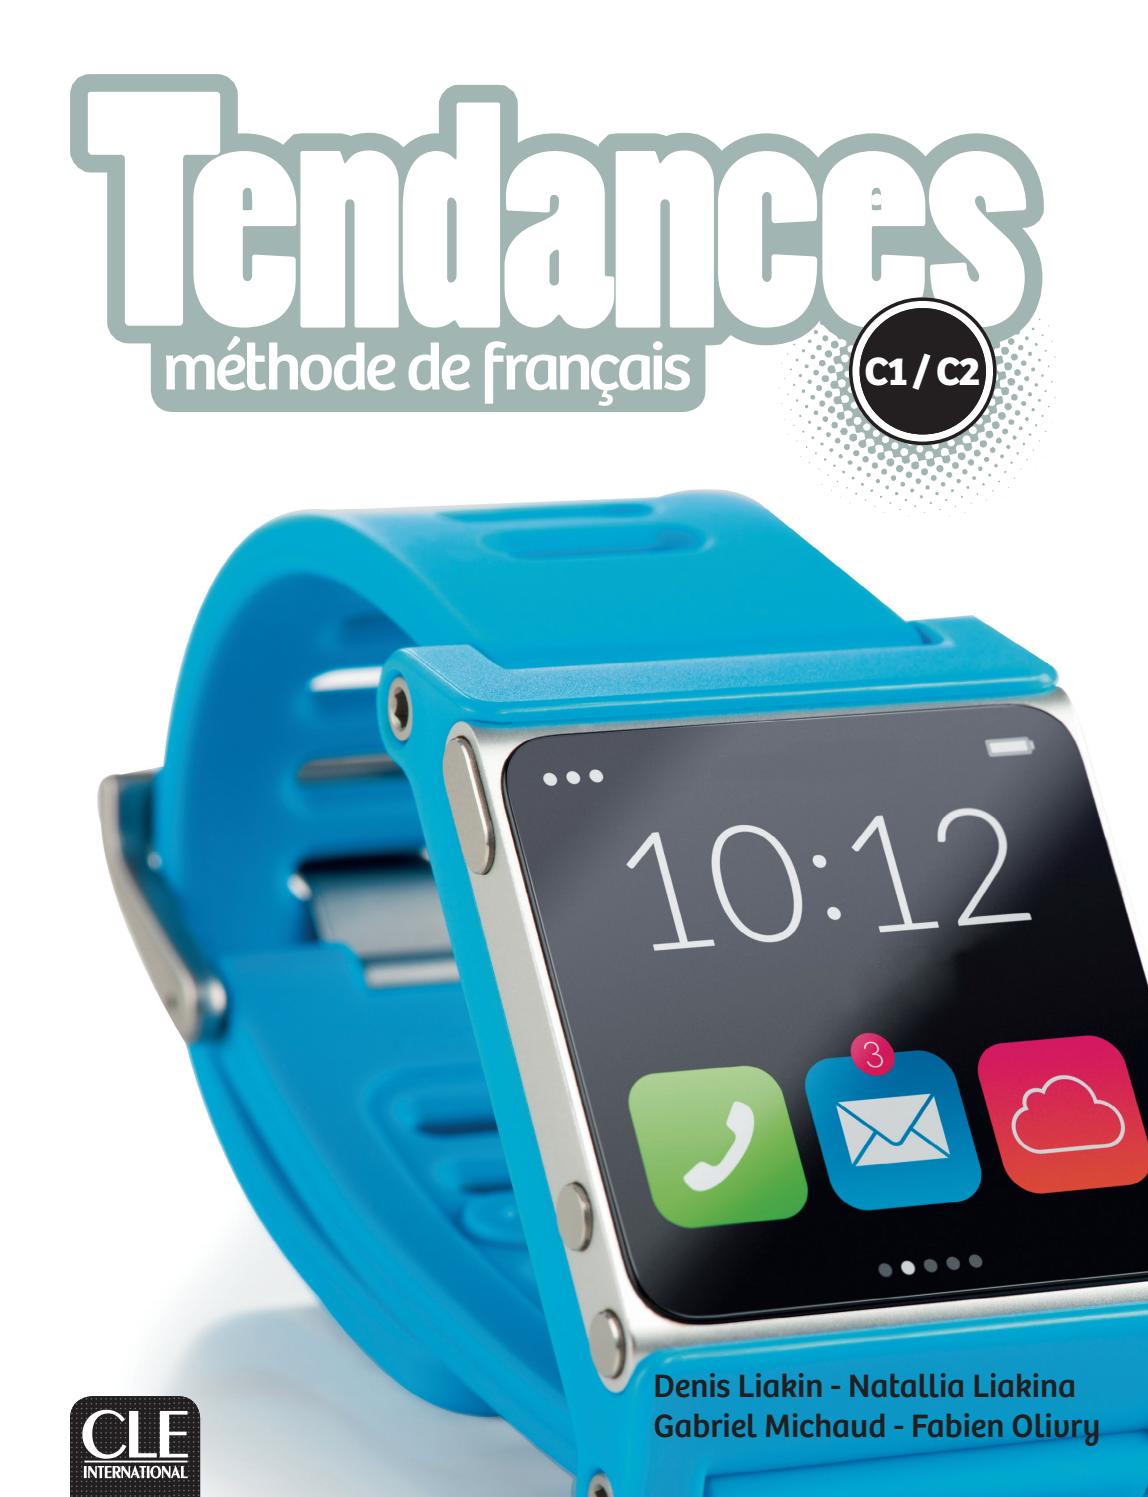 法语教材 |Tendances C1/C2青少年和成人 法语教材 Clé International出版社